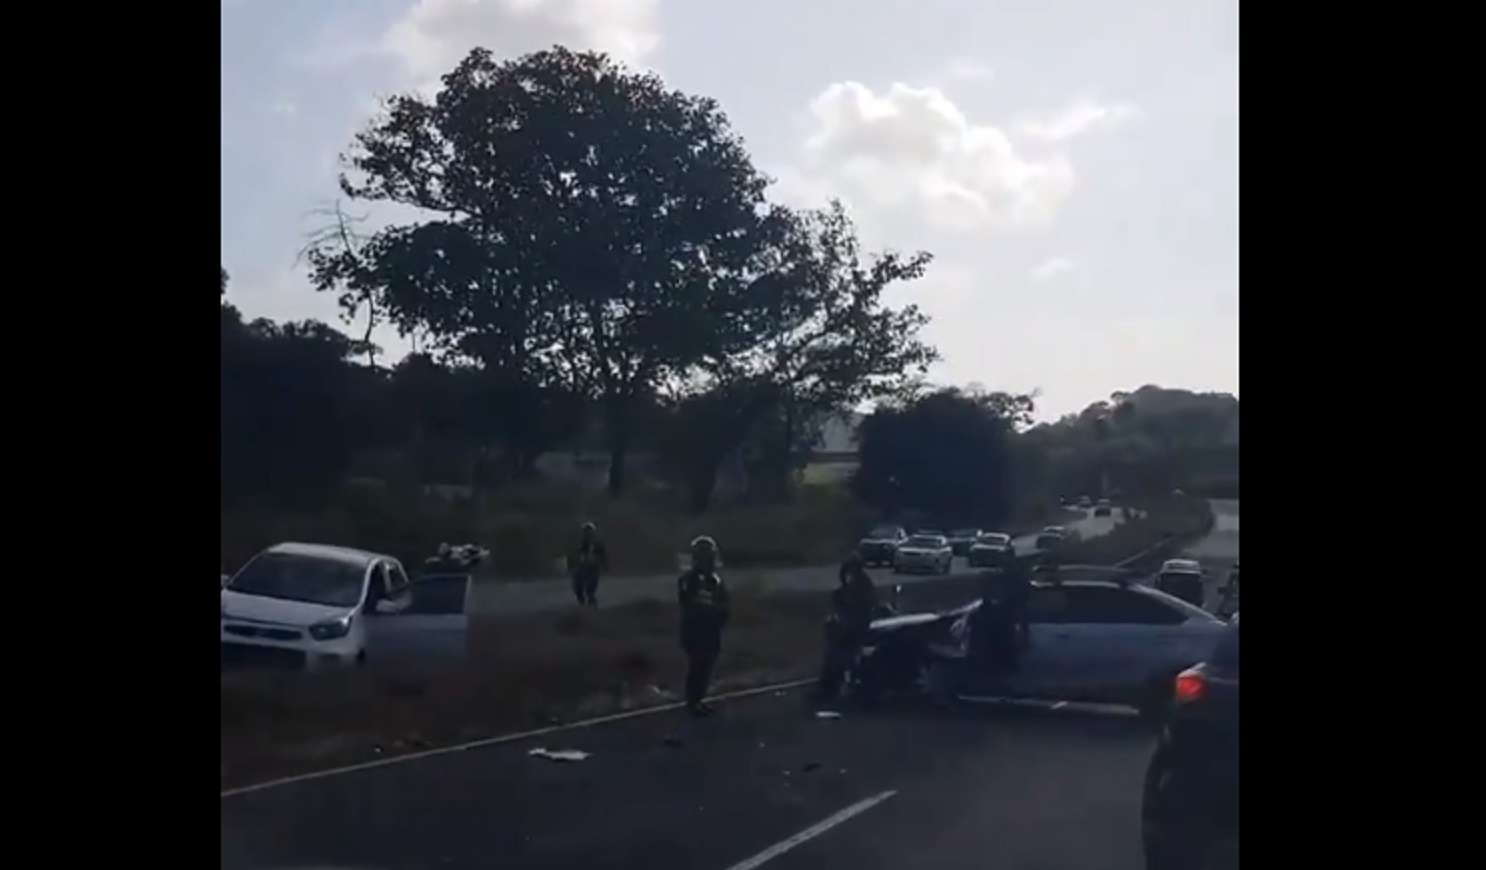 Vista general del área del accidente. Captura de video: @TraficoCPanama